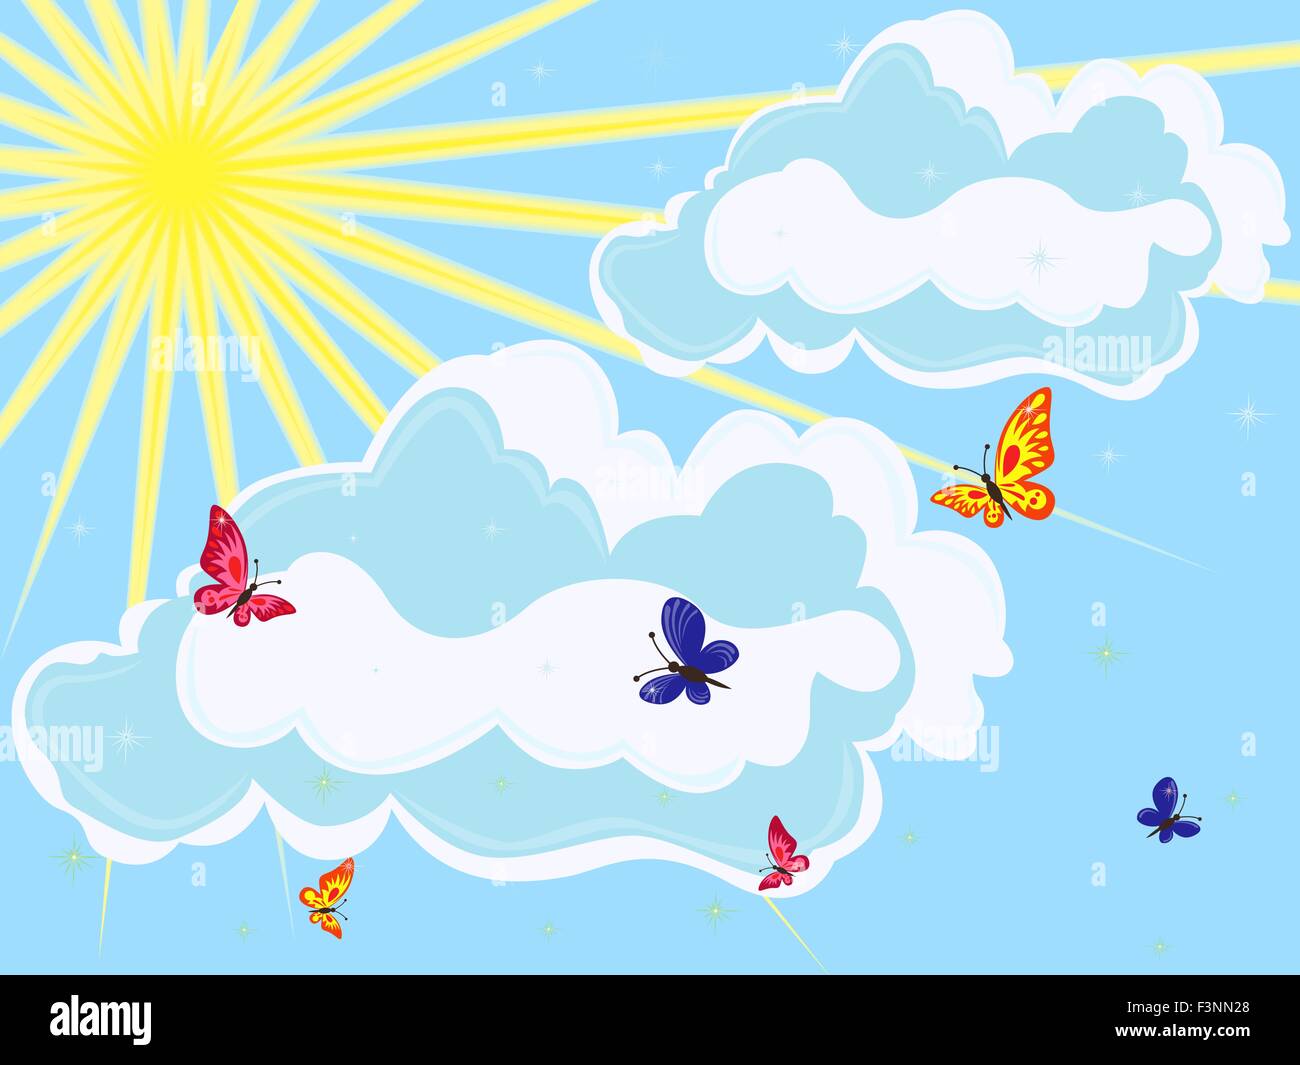 Himmel mit Sonne, Wolken und Schmetterlinge im Vordergrund. Hand-Zeichnung-Vektor-illustration Stock Vektor